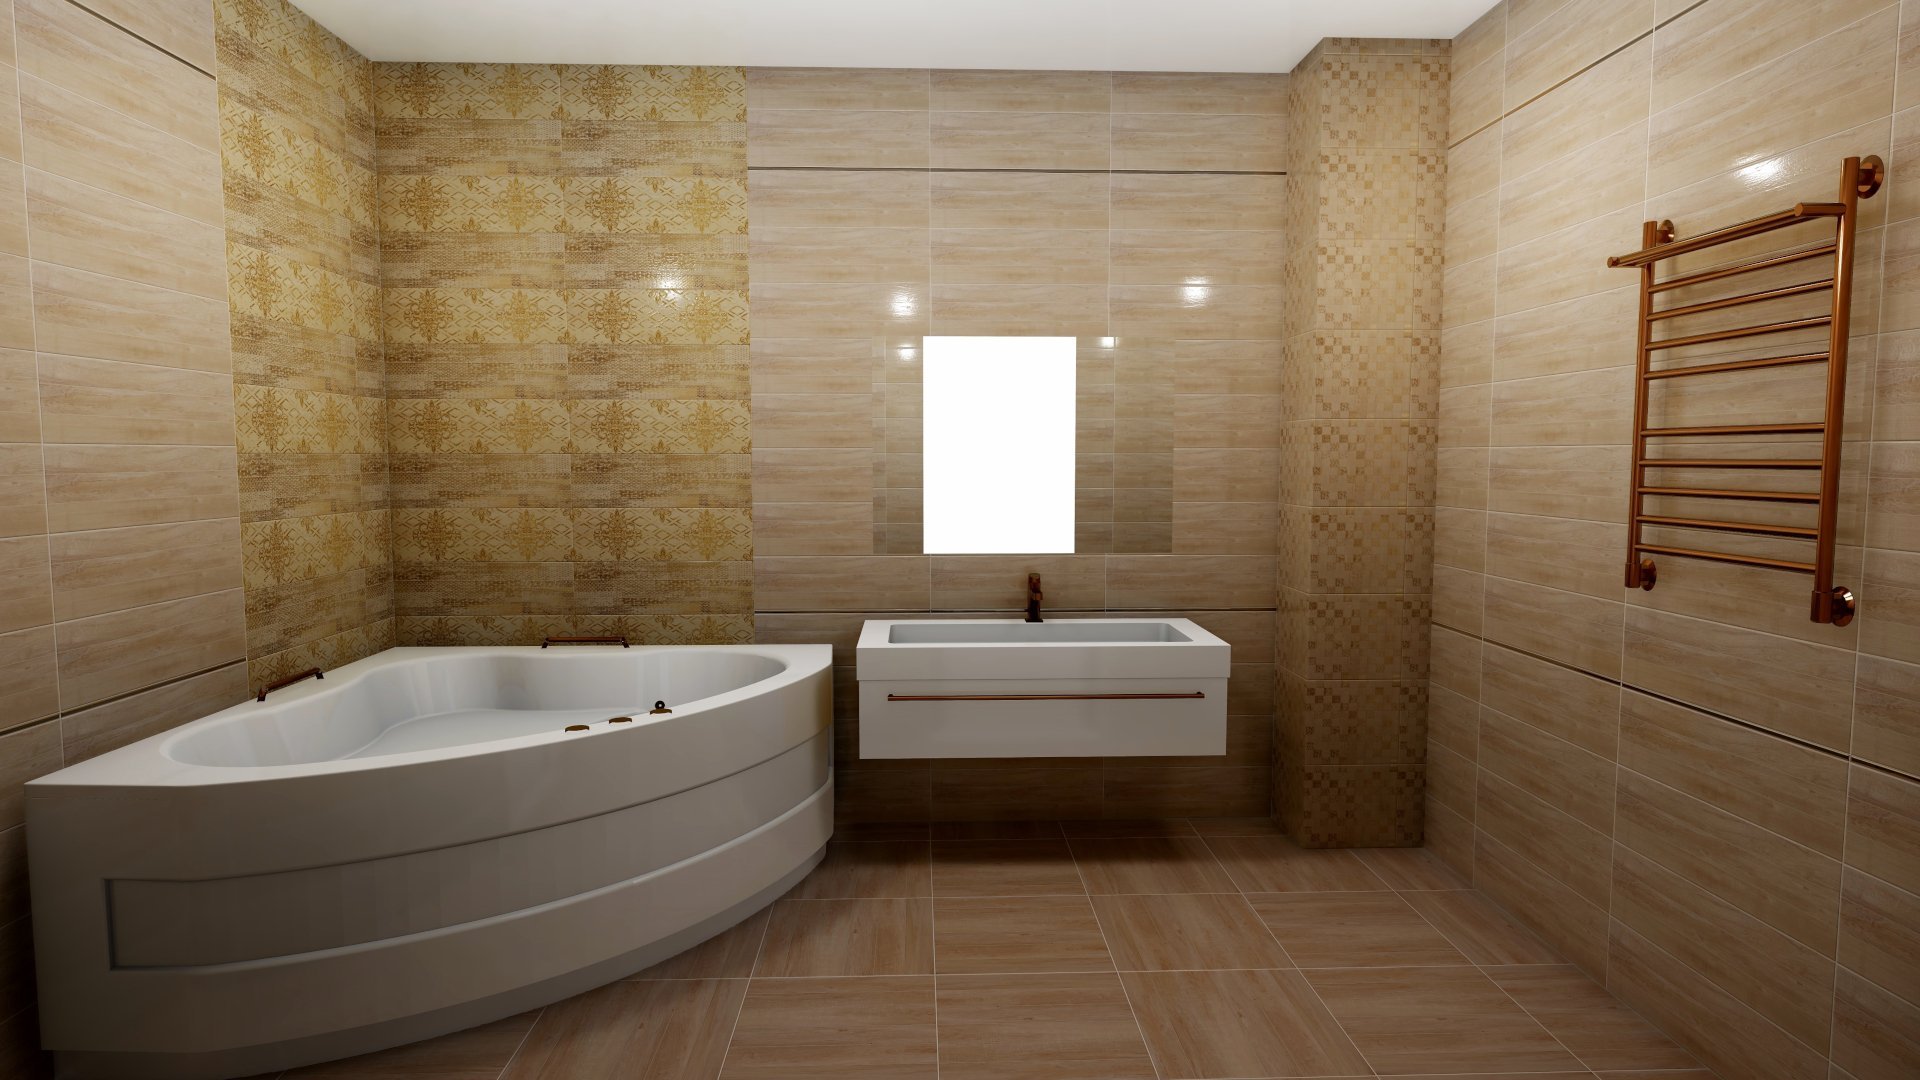 Ванная комната отделка стен панелями. Alta Cera плитка. Отделка ванной комнаты панелями. Панели для отделки стен в ванной. Панели в ванную комнату под дерево.